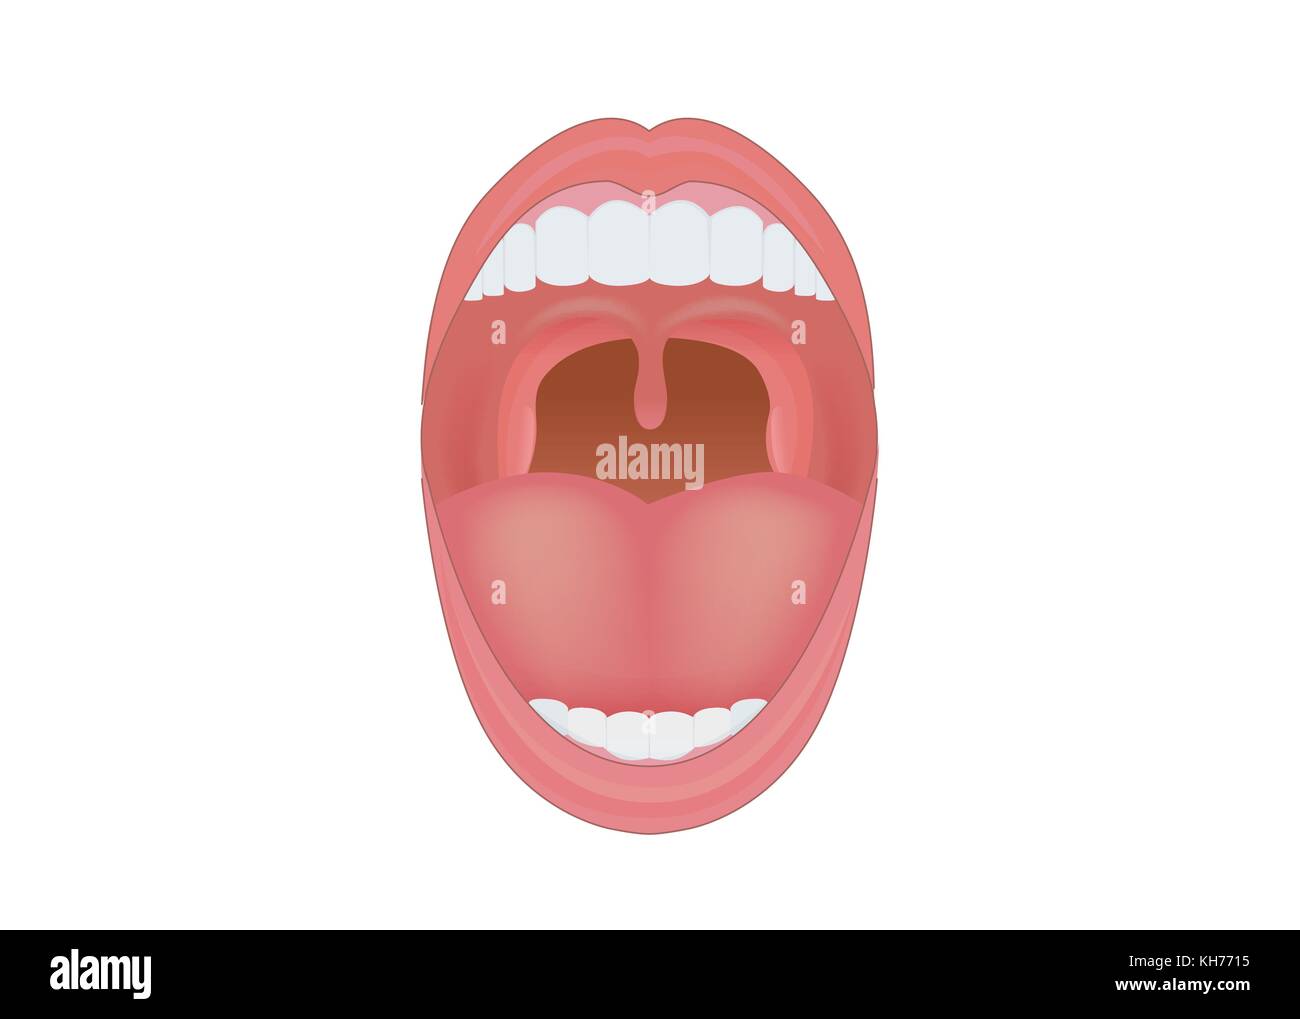 Menschlichen Mund, Zähne, Zahnfleisch und Zunge nach innen zeigen. Stock Vektor